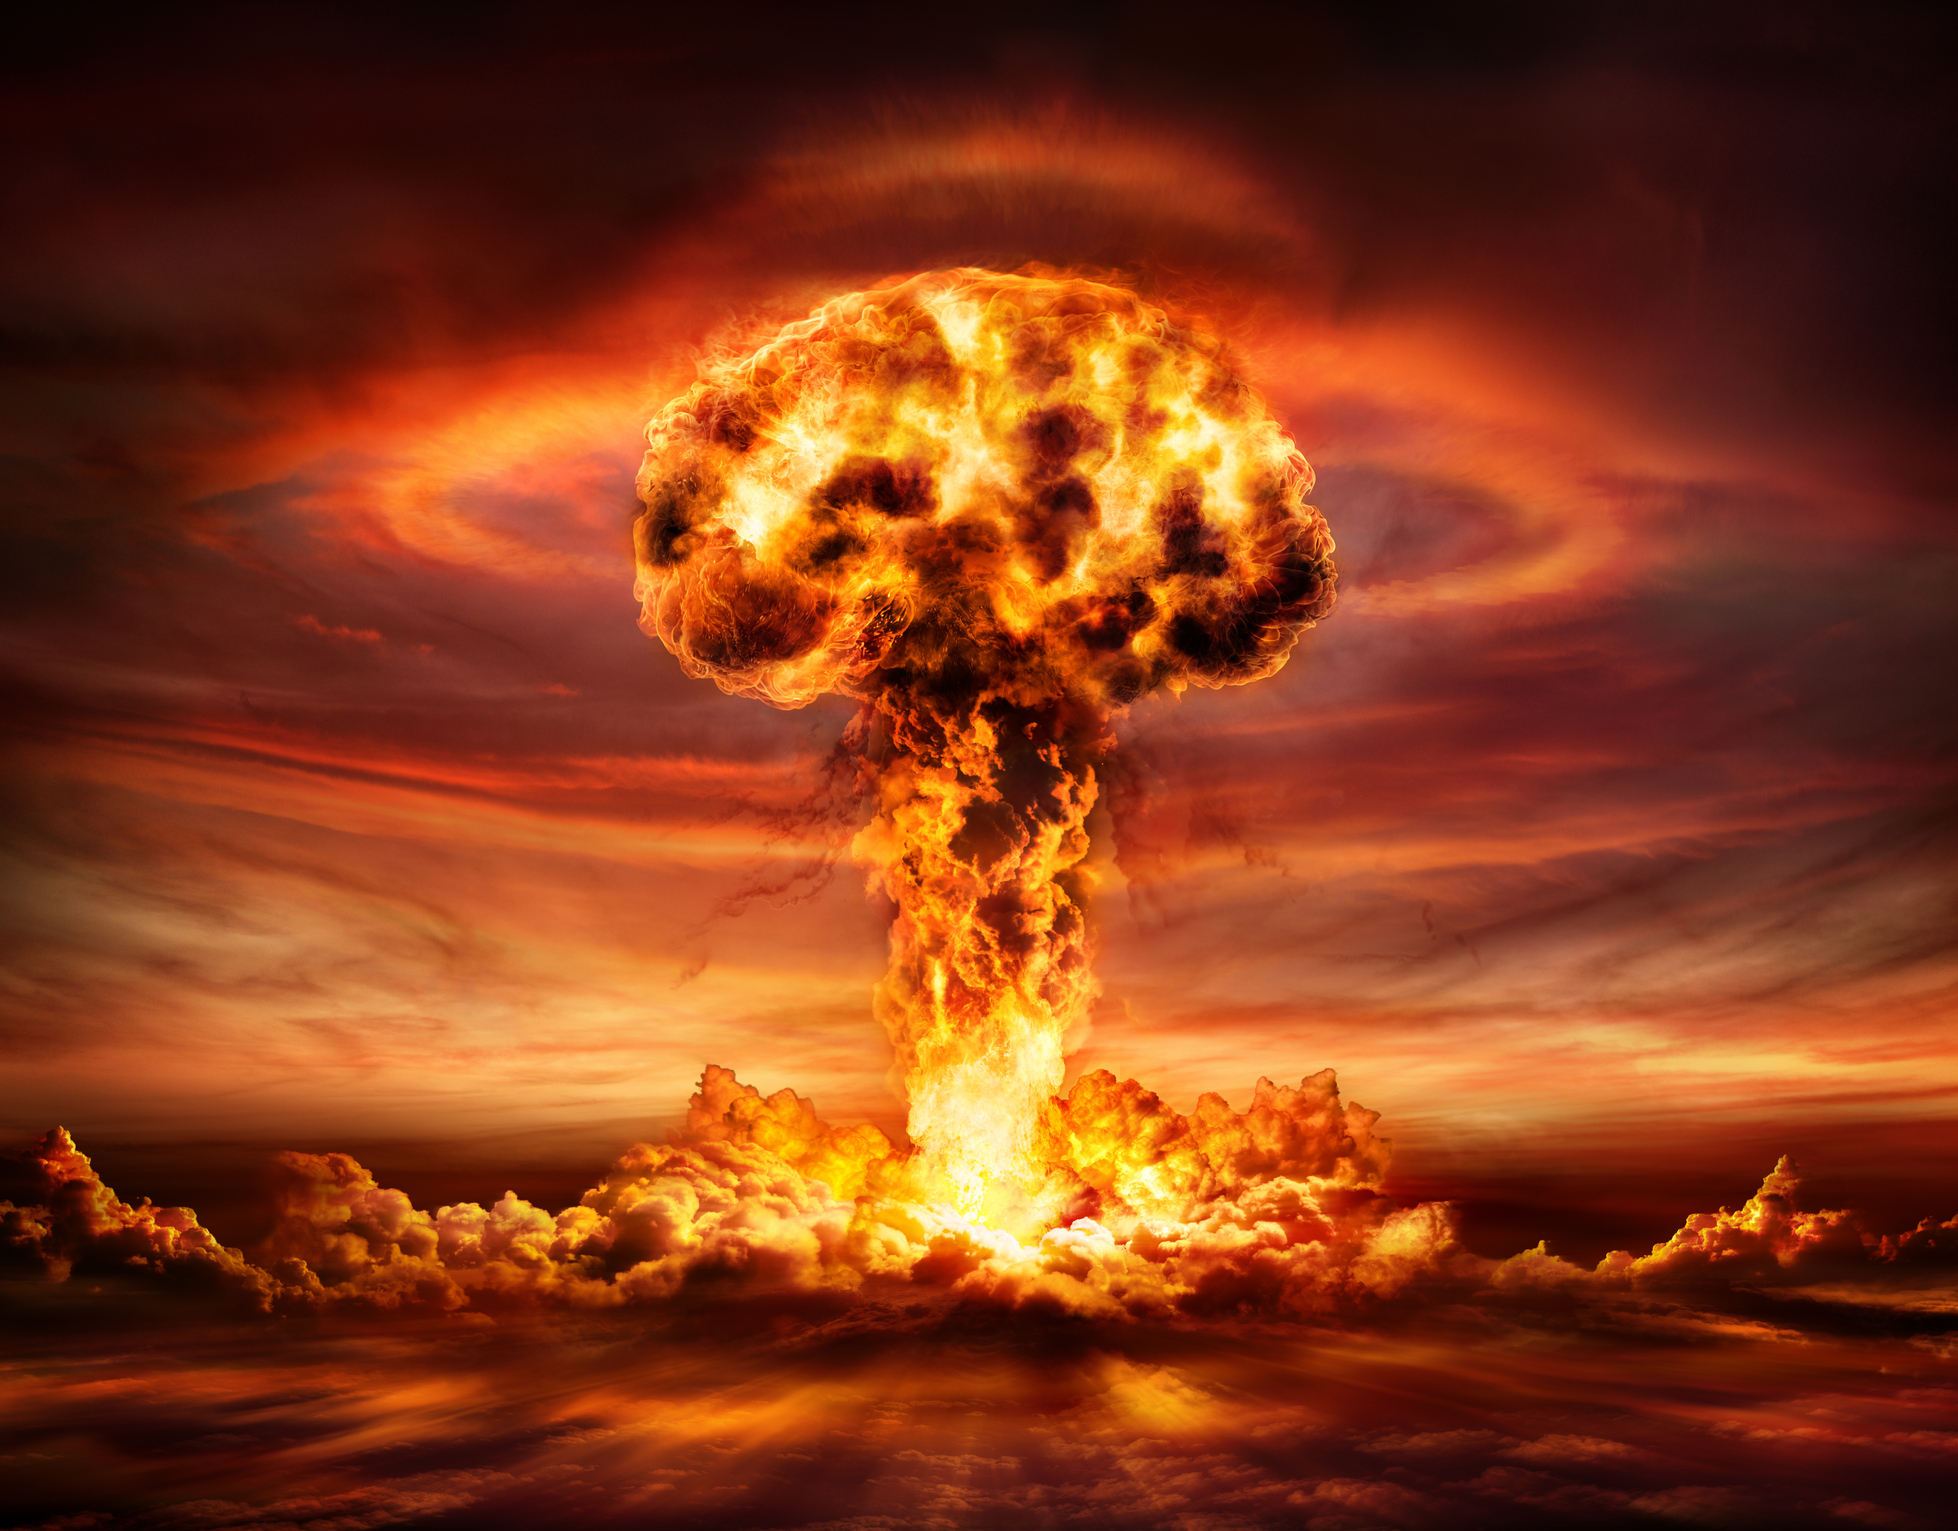 Ρωσία, ΗΠΑ και Κίνα φτιάχνουν νέα πεδία πυρηνικών δοκιμών – «Συνταγή αφανισμού της ανθρωπότητας»